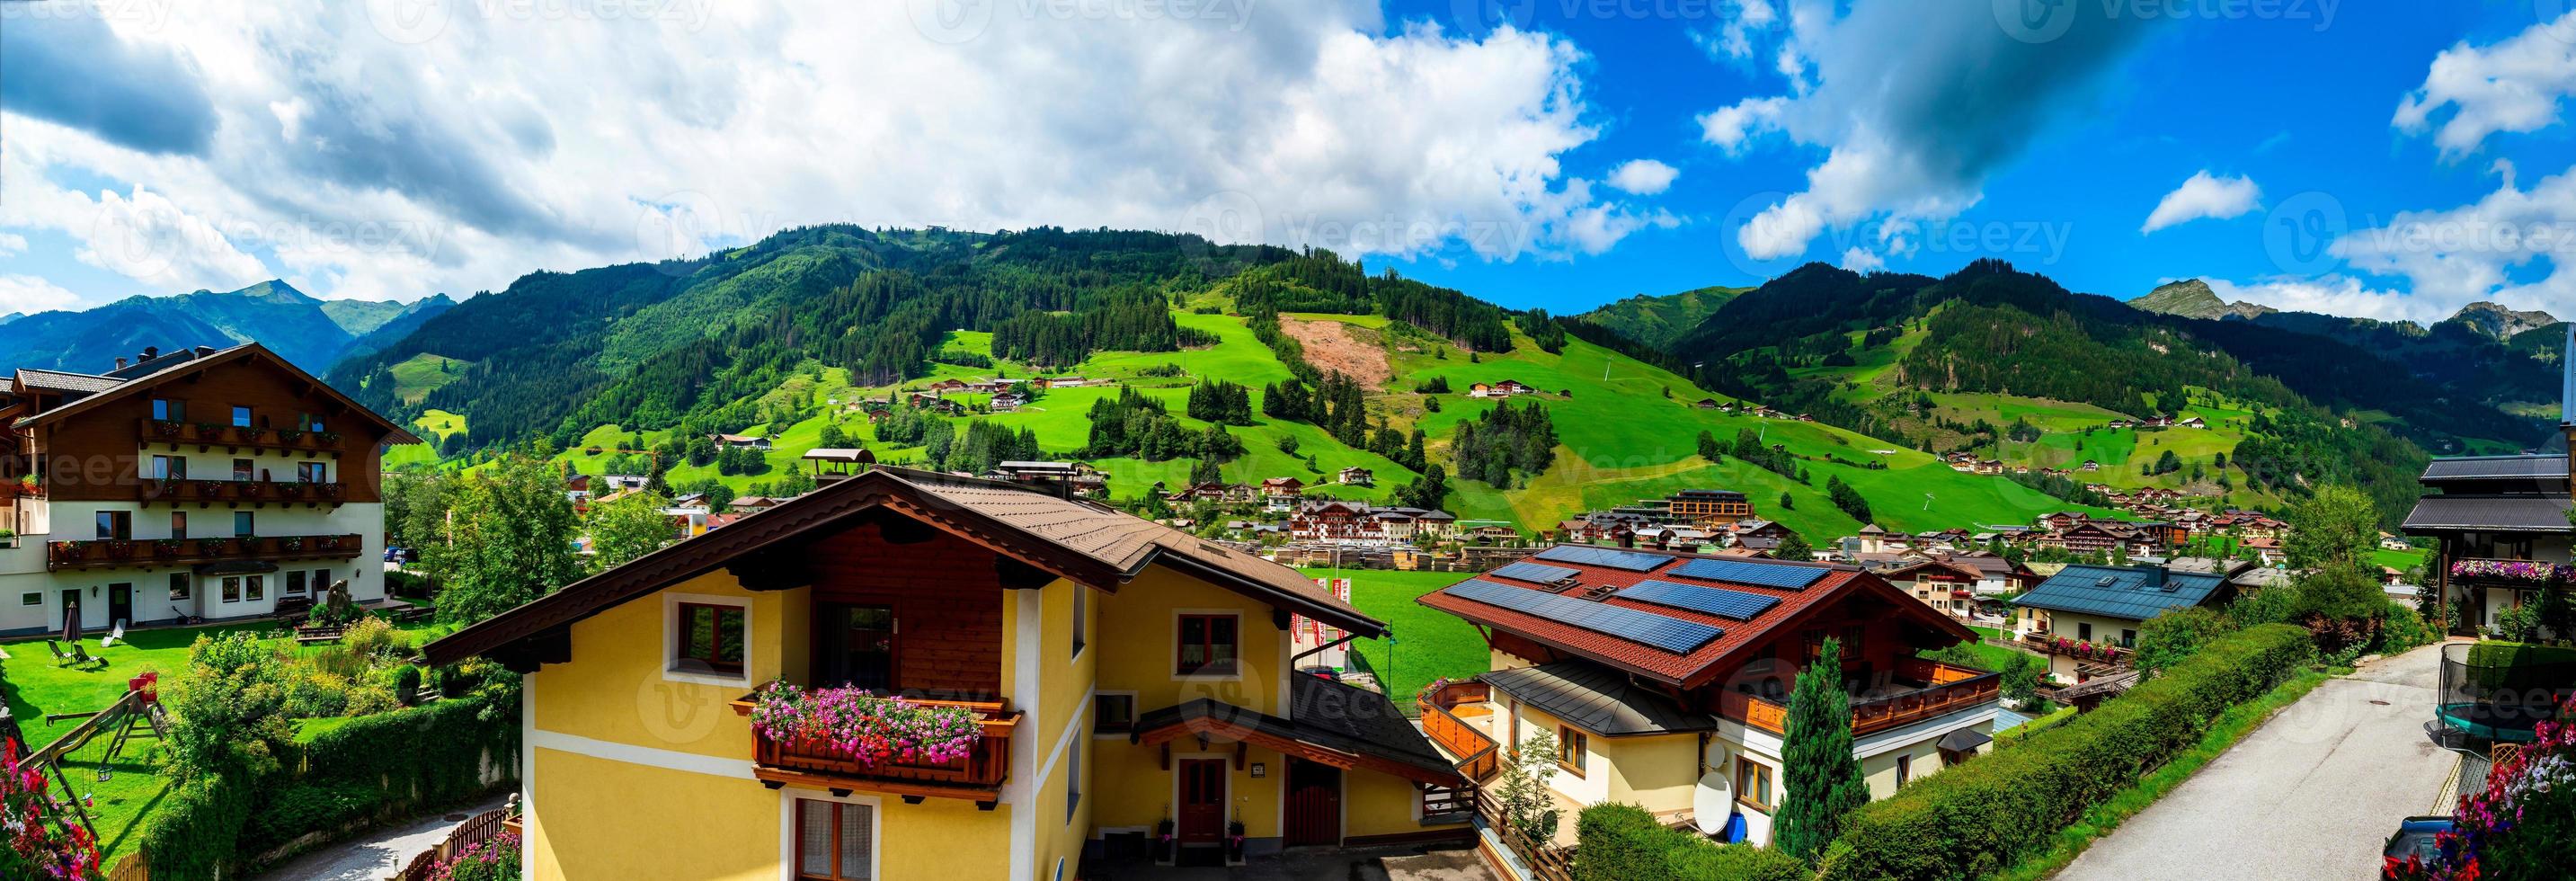 splendido scenario alpino in austria, vicino al villaggio di grossarl. vista panoramica. un'alta risoluzione. foto